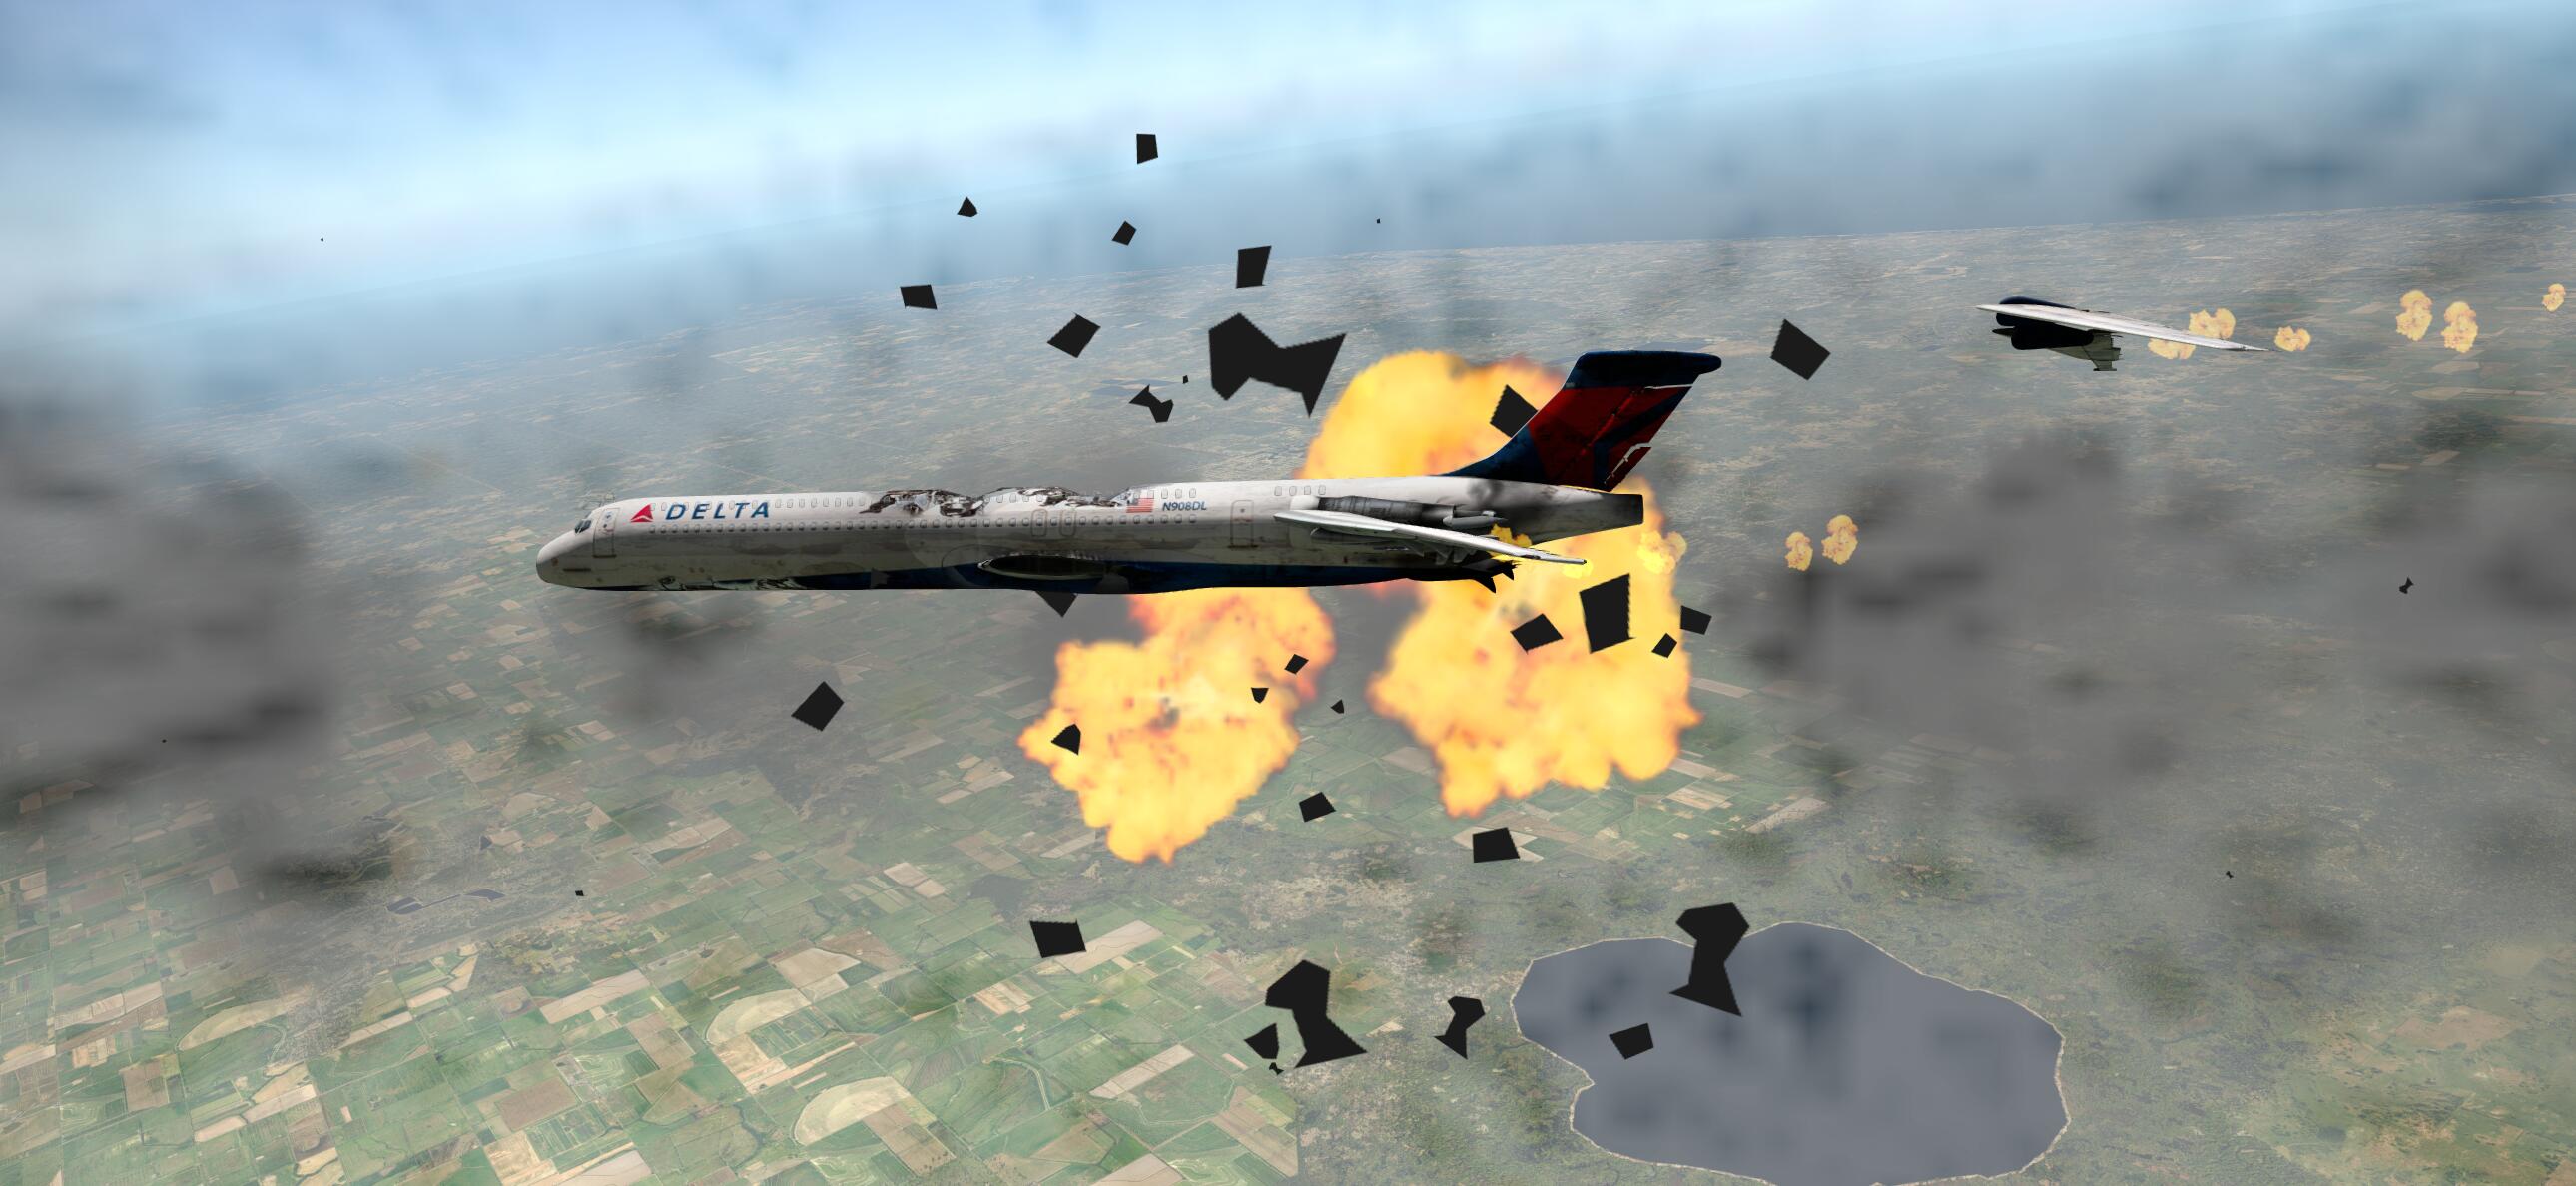 还记得马航MH17吗？被导弹击落的瞬间-8011 